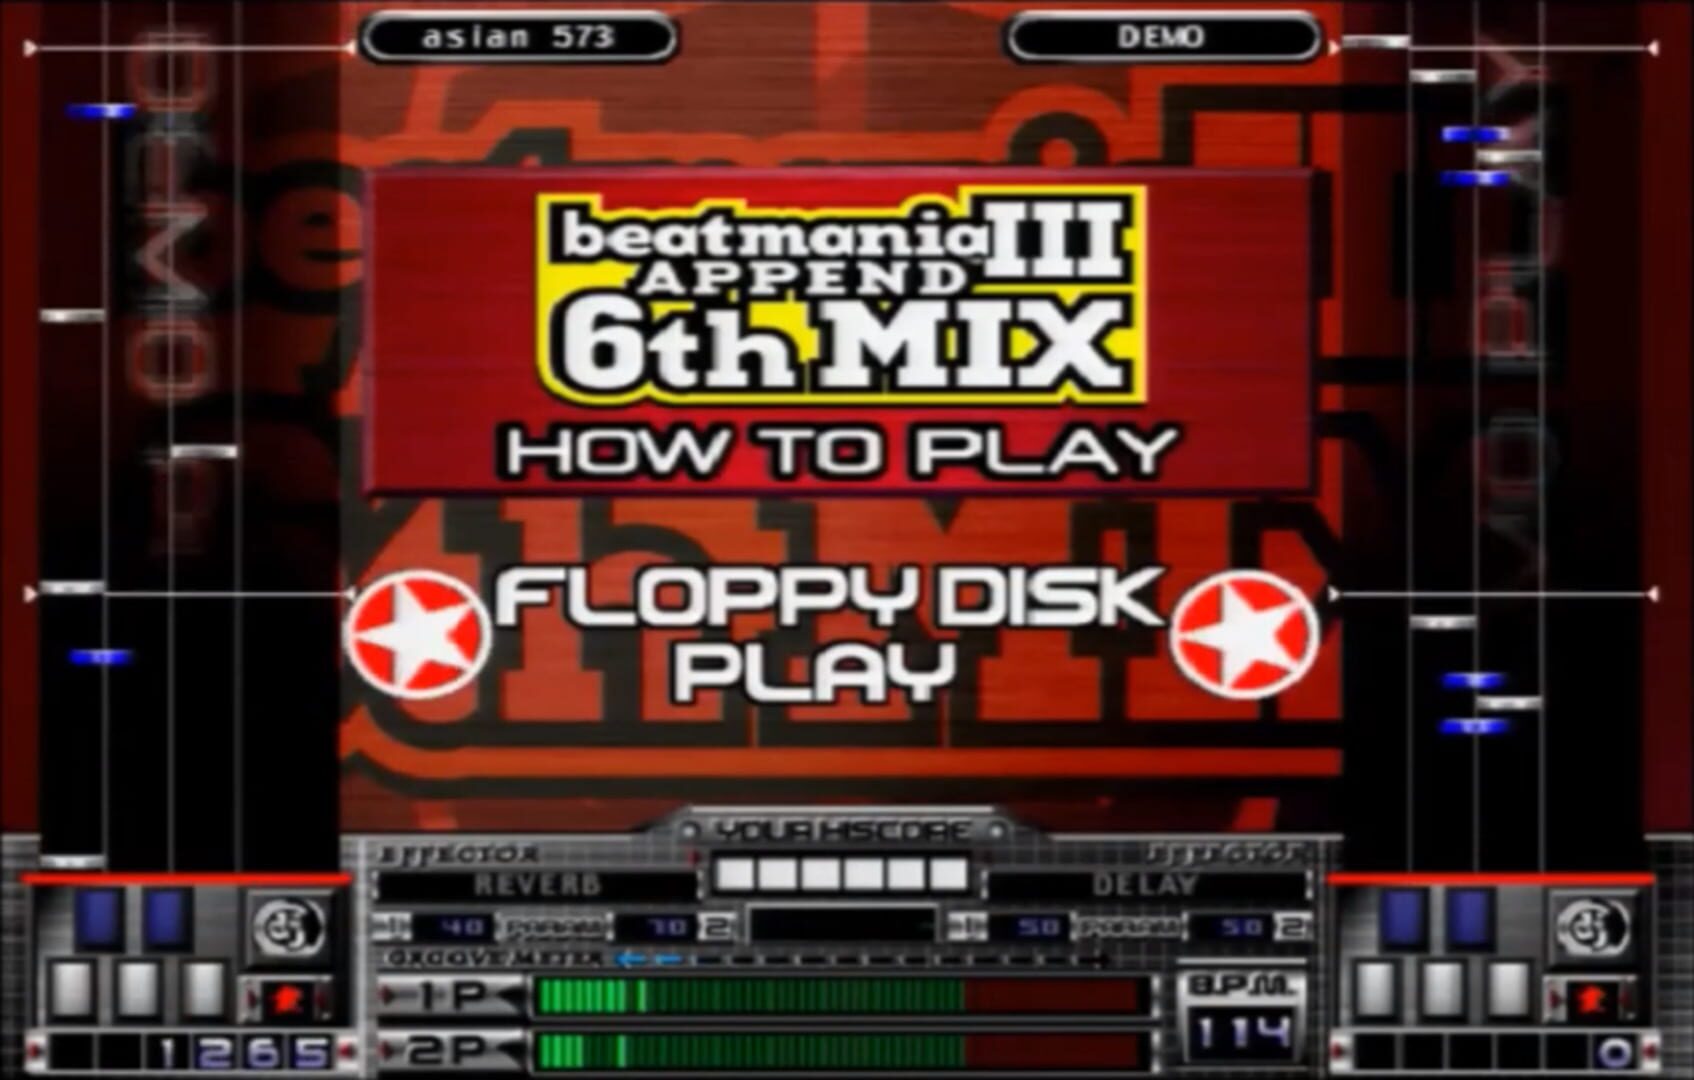 Captura de pantalla - Beatmania III: Append 6thMix